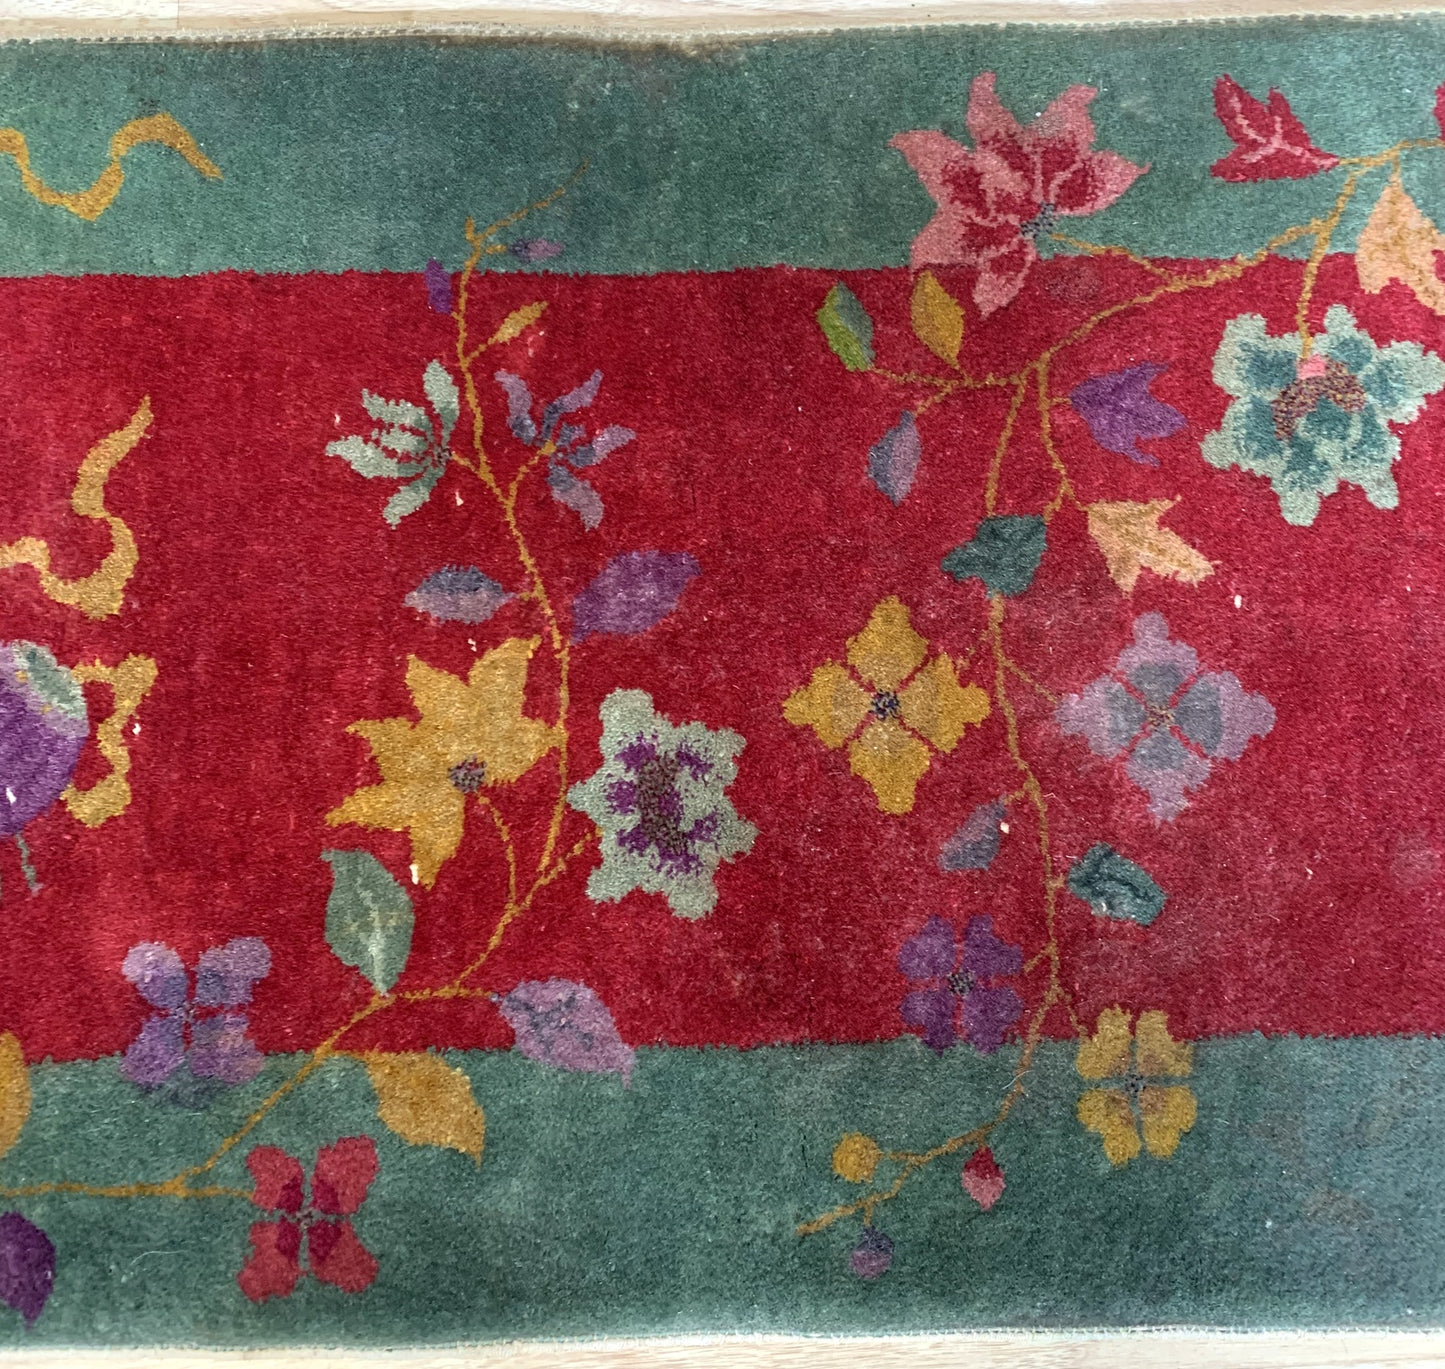 Handcrafted details on vintage rug